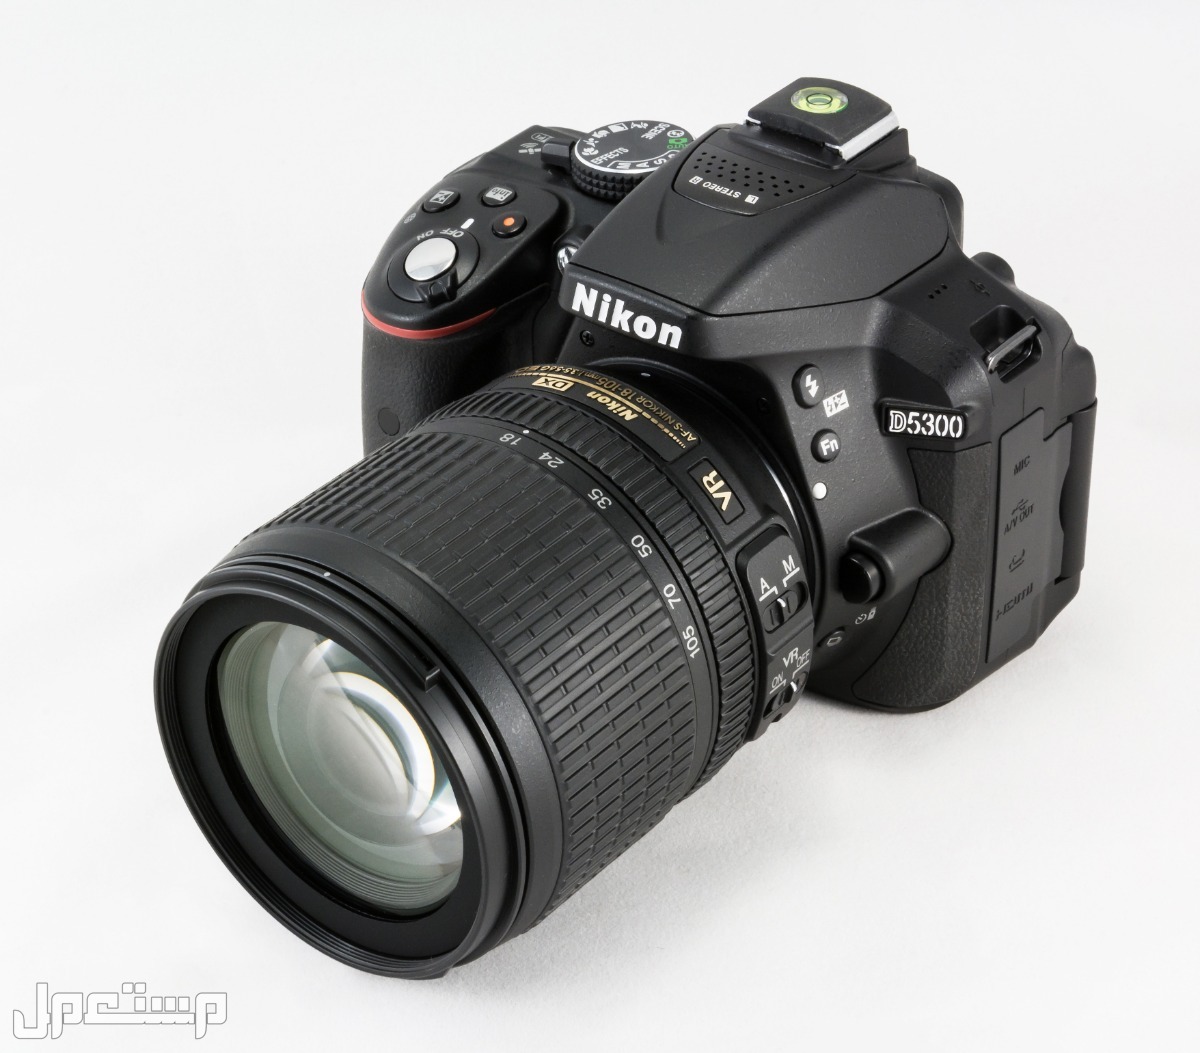 مواصفات ومميزات وأسعار أفضل أنواع كاميرات نيكون للمحترفين في ليبيا كاميرا Nikon D5300